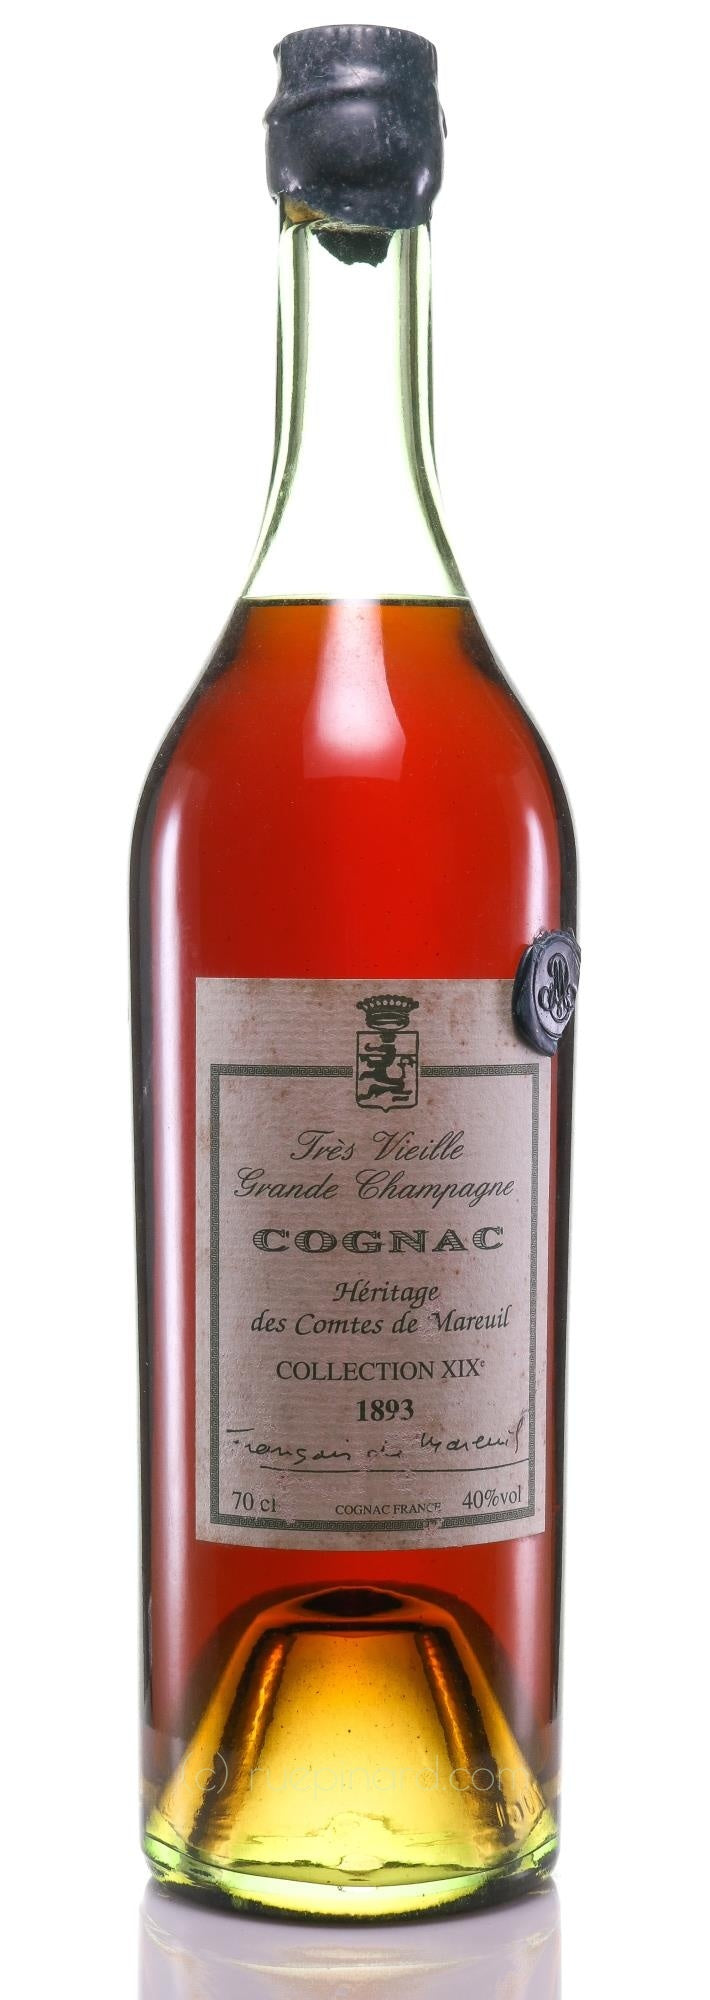 Cognac 1893 Comtes de Mareuil Heritage des Comtes de Mareuil Collection XIX Trés Vieille Grande Champagne - Rue Pinard